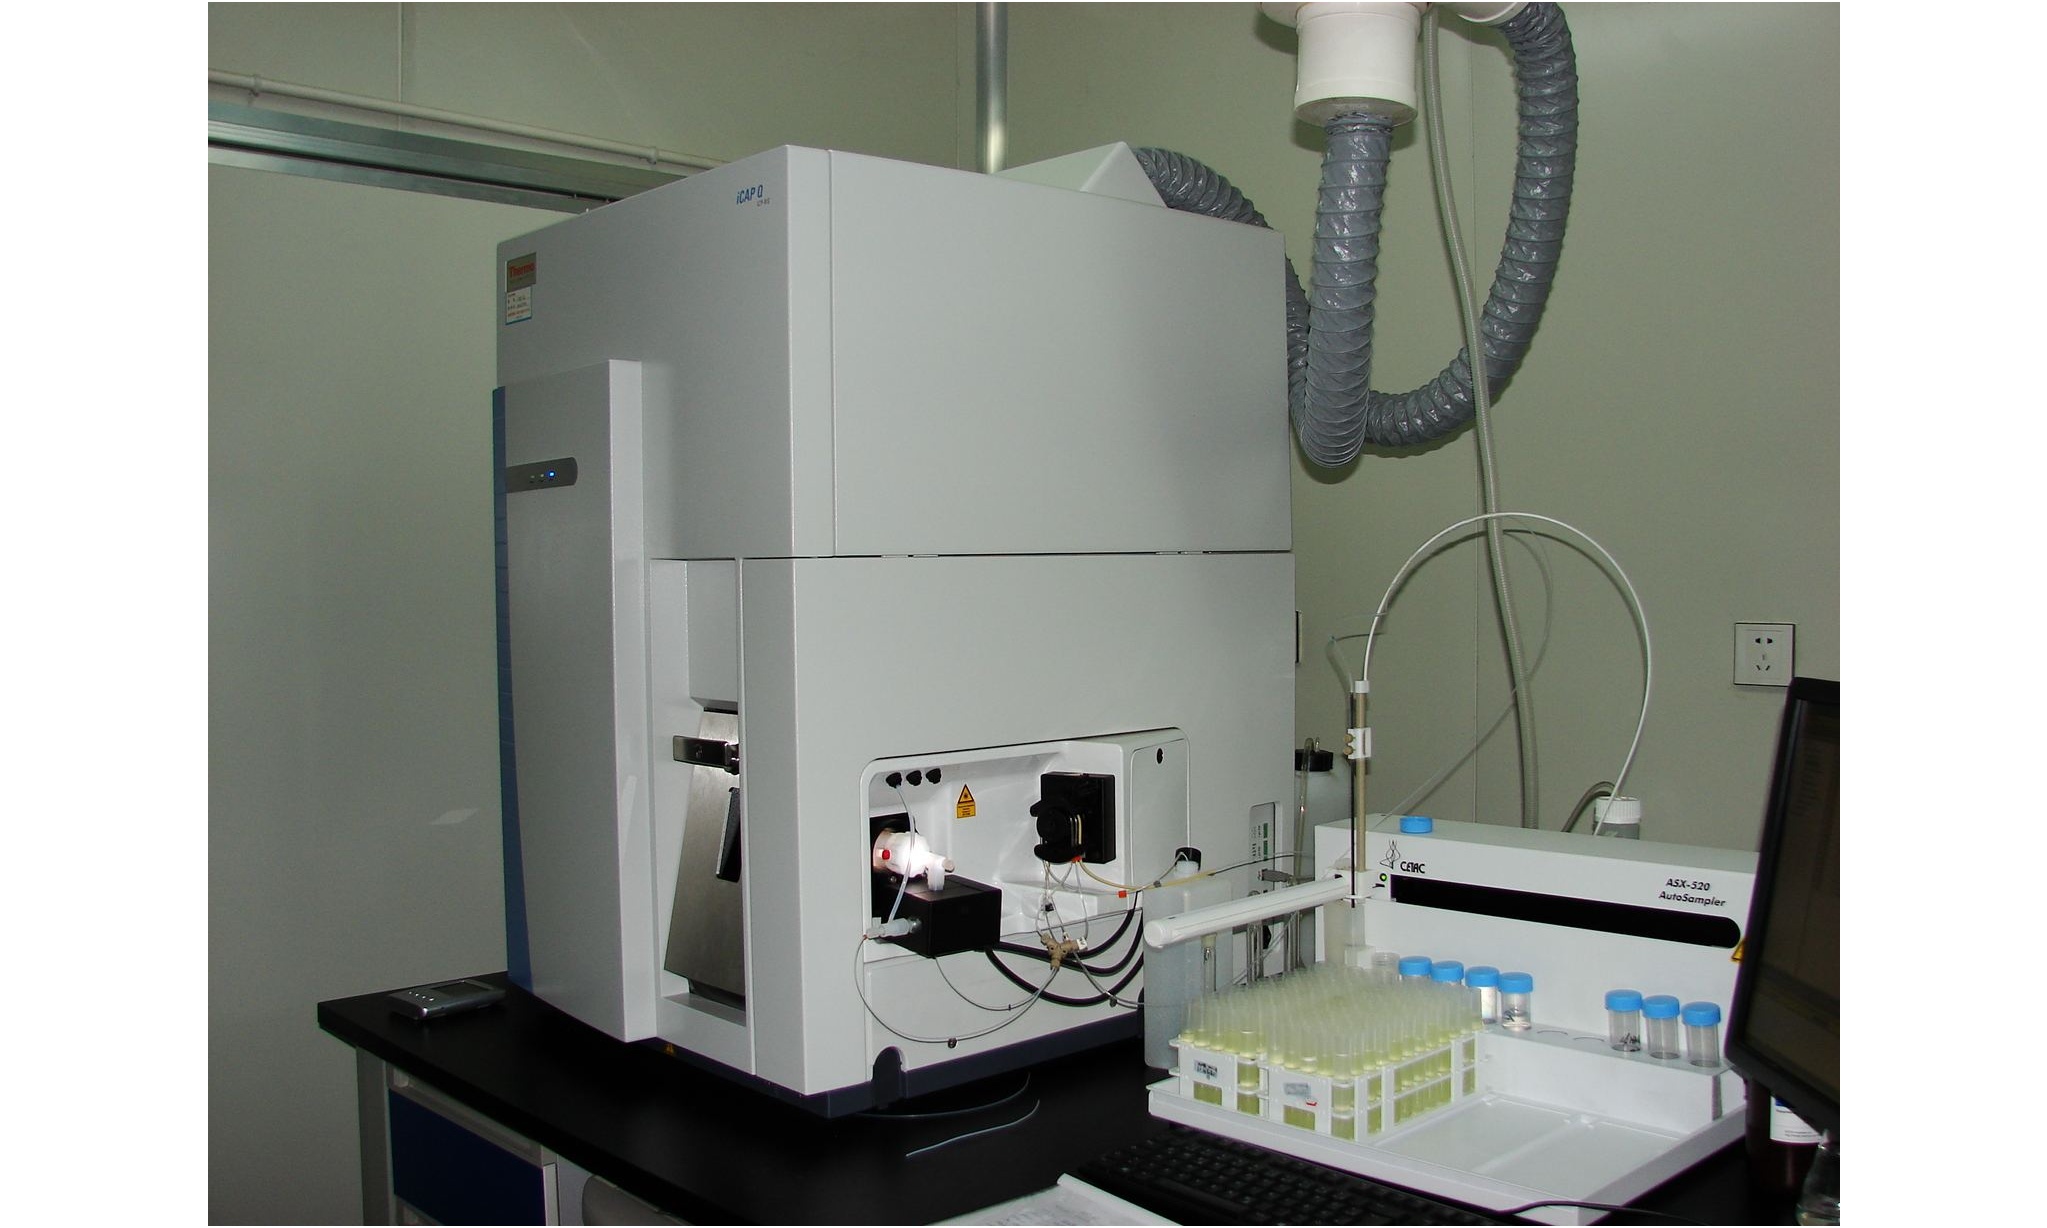 中国检疫科学院电感耦合等离子体质谱仪等仪器设备采购中标公告